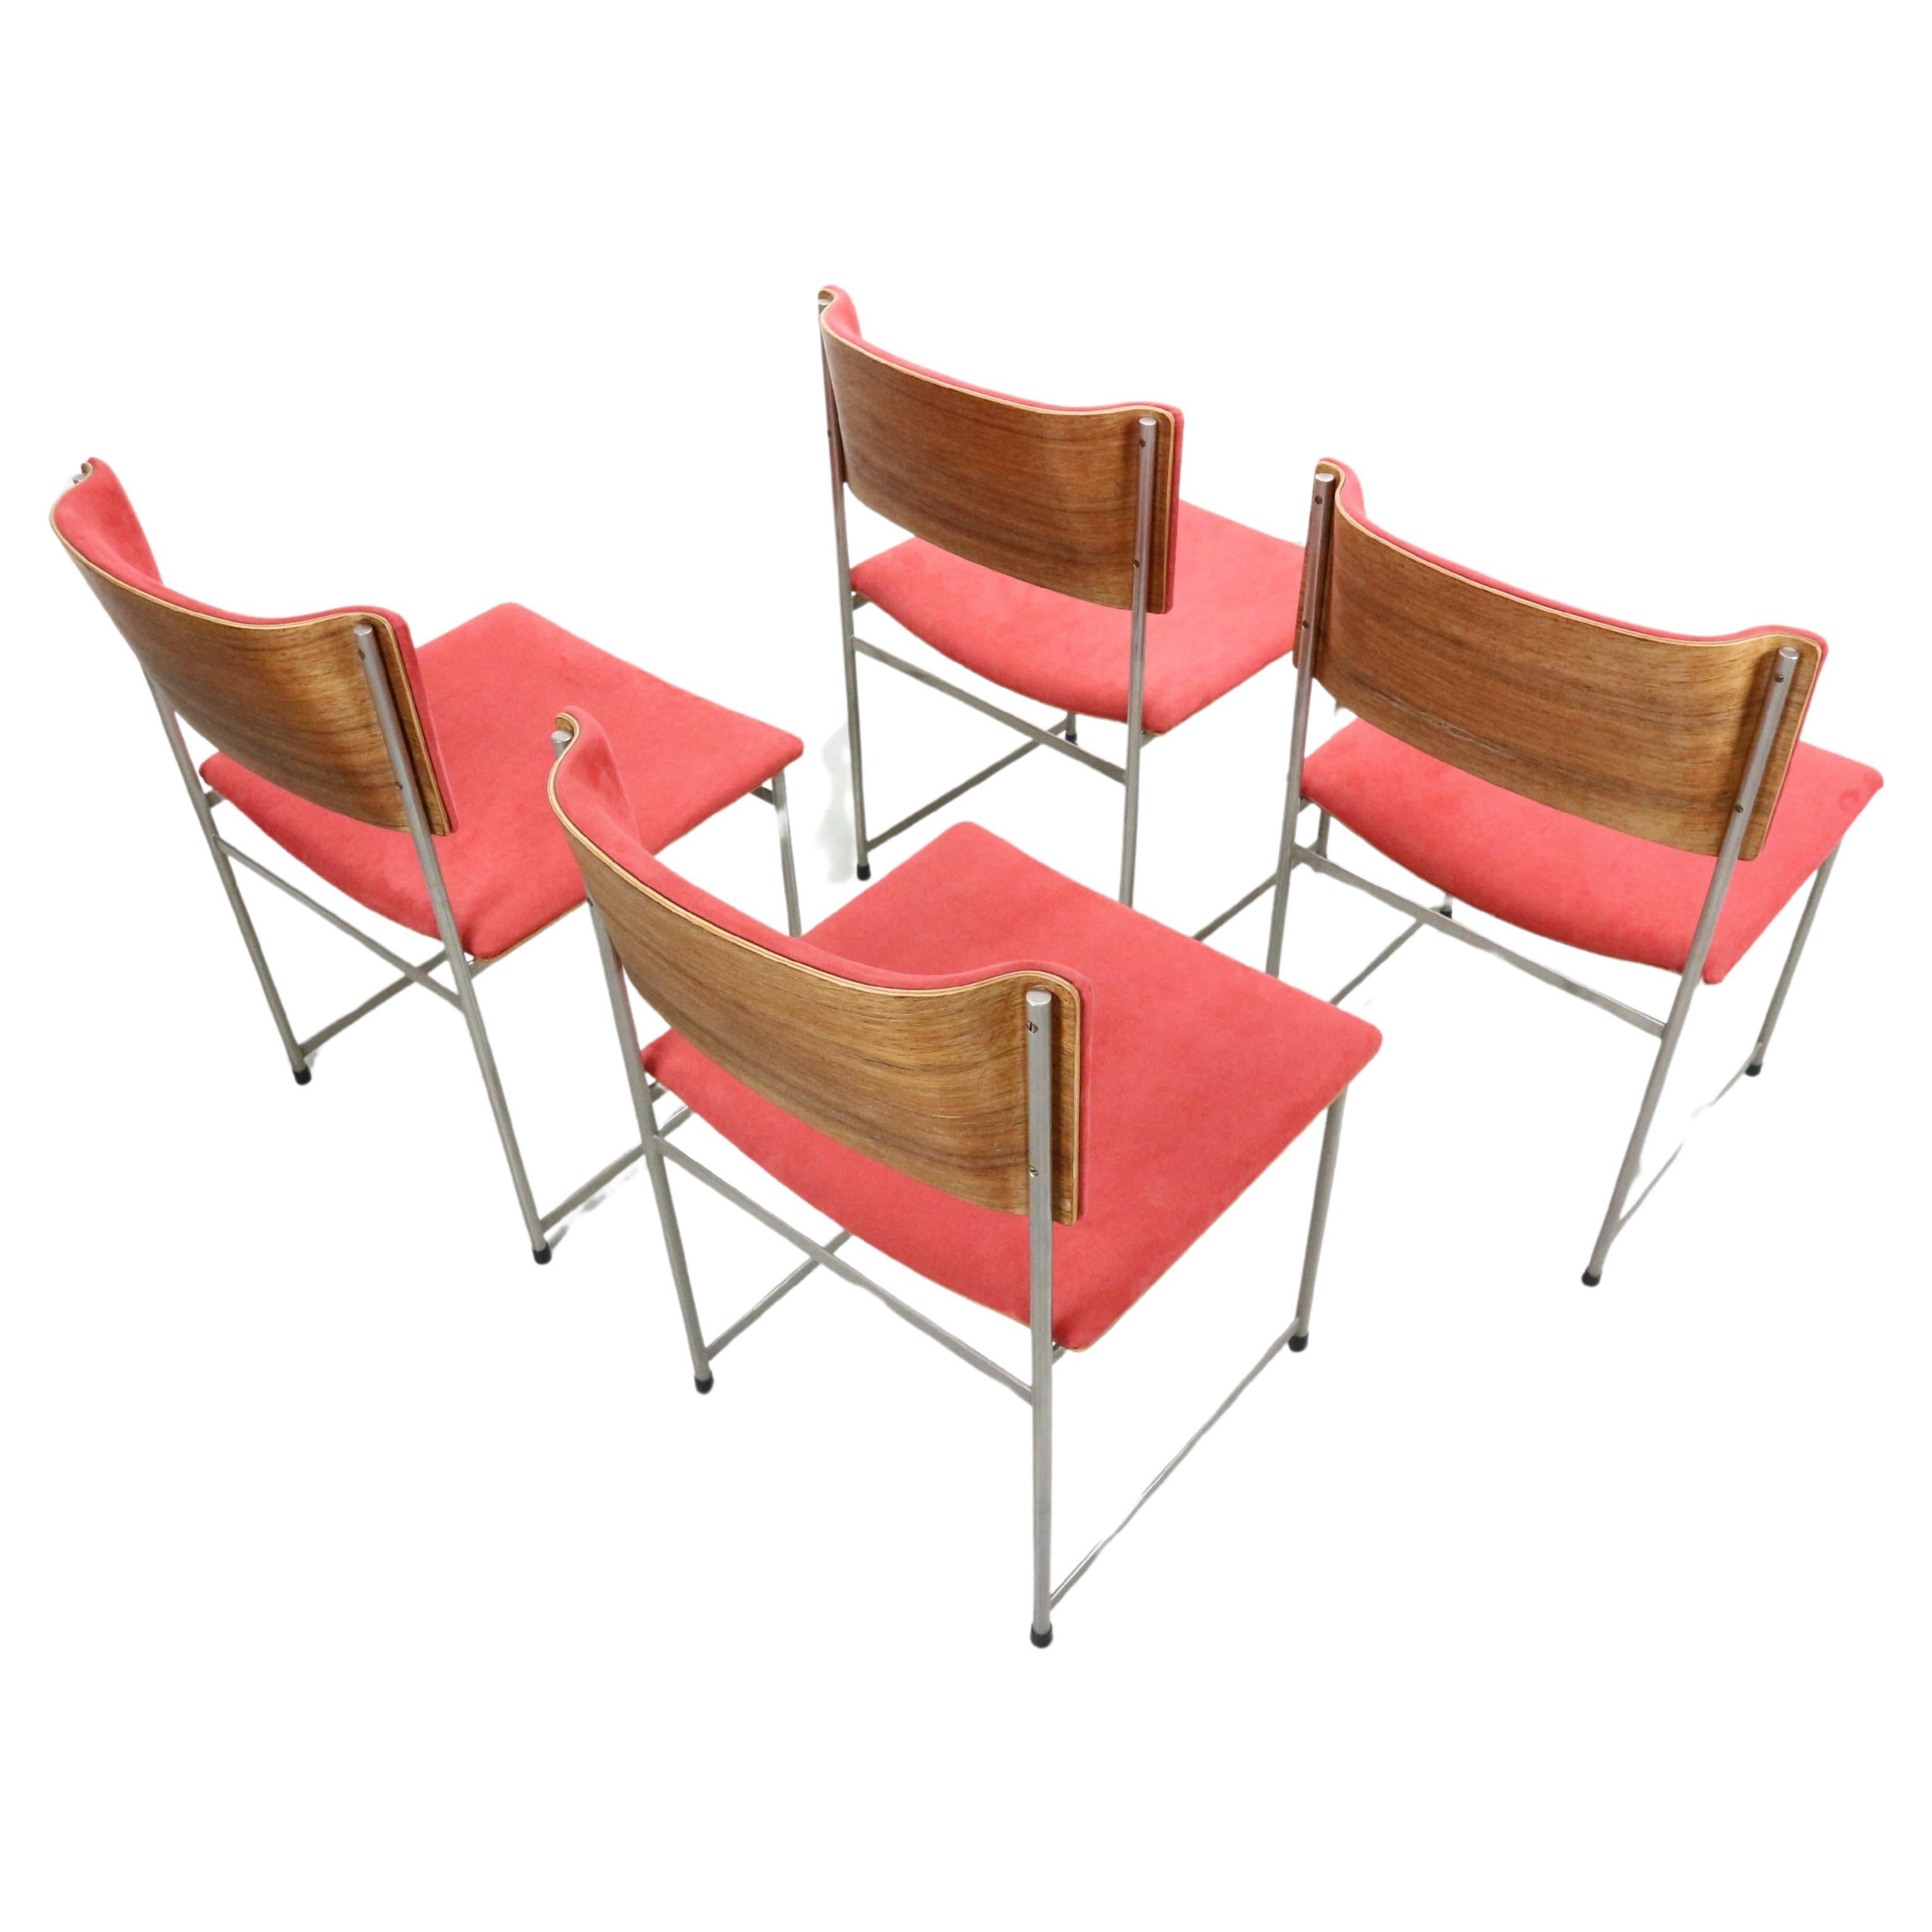 Ensemble de 4 chaises SM08 conçues dans les années 1950 par Cees Braakman pour UMS Pastoe aux Pays-Bas. Structure en métal nickelé et dossier en placage de bois de teck. La sellerie d'origine en alcantara est en bon état, quelques petites bouloches